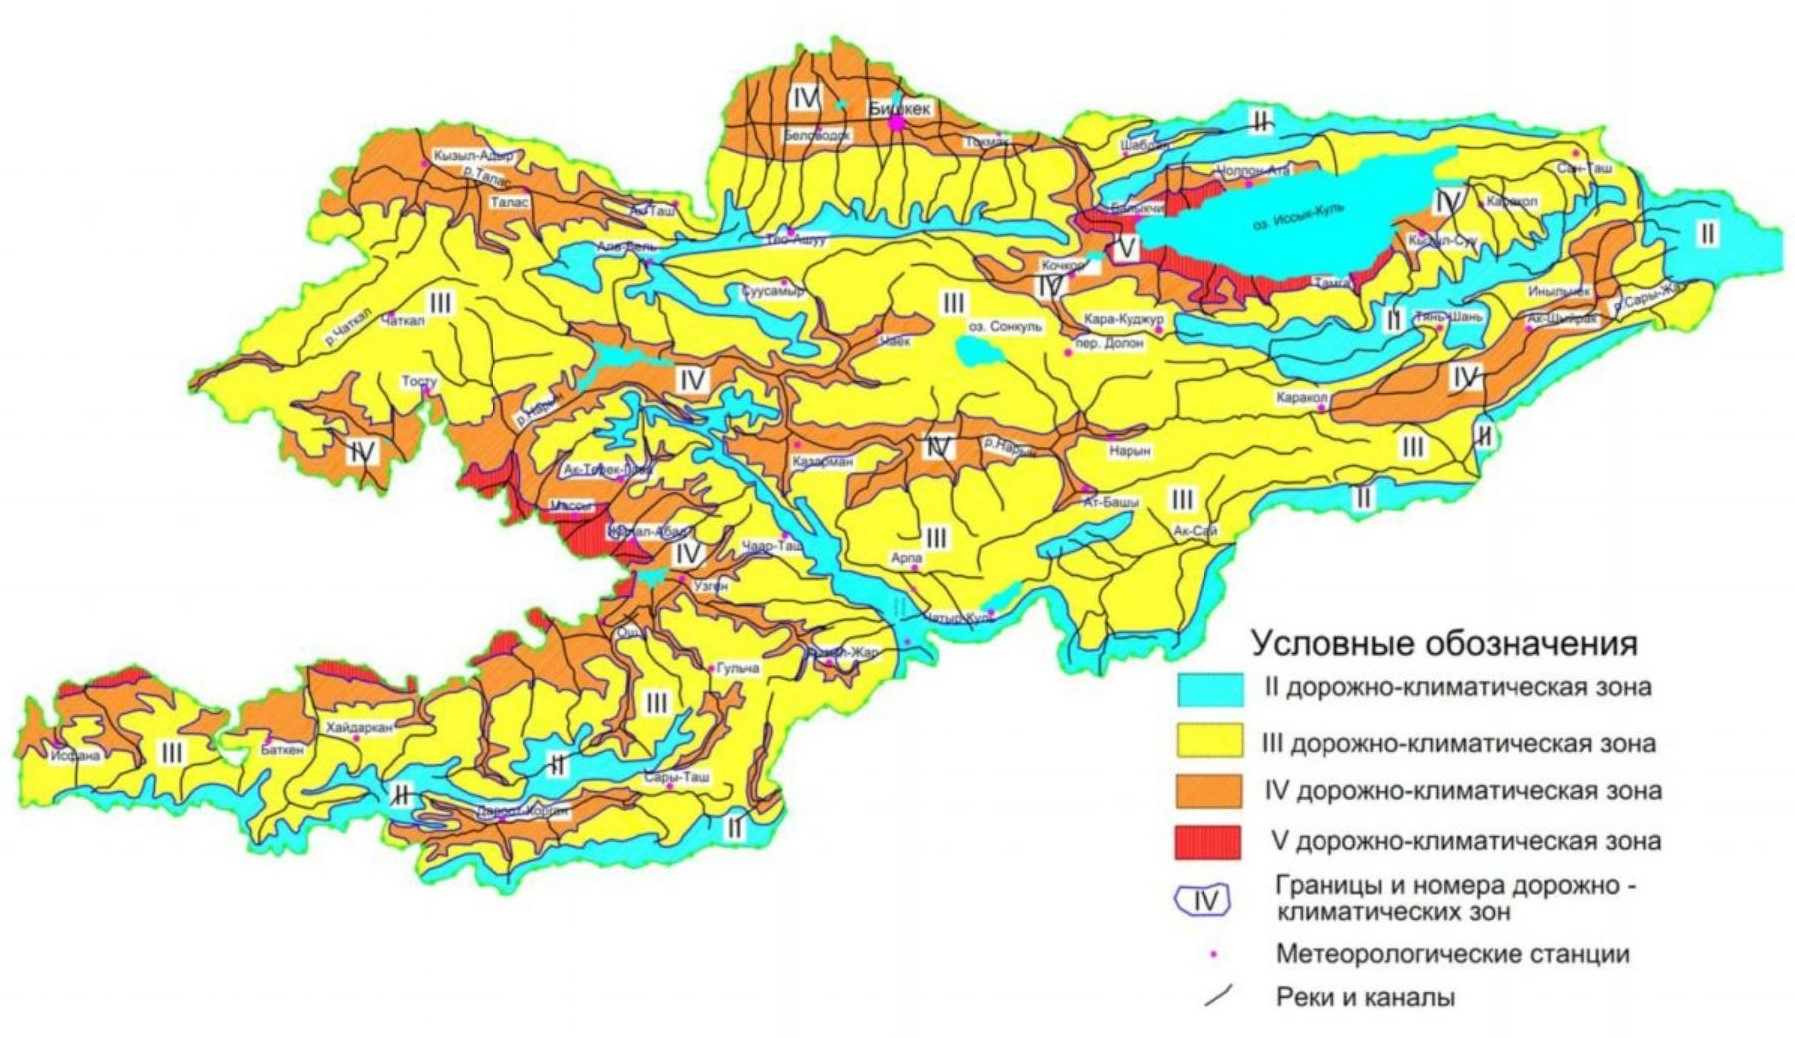 Дорожно-климатическое районирование Кыргызской Республики (согласно СНиП КР 32-01:2004)